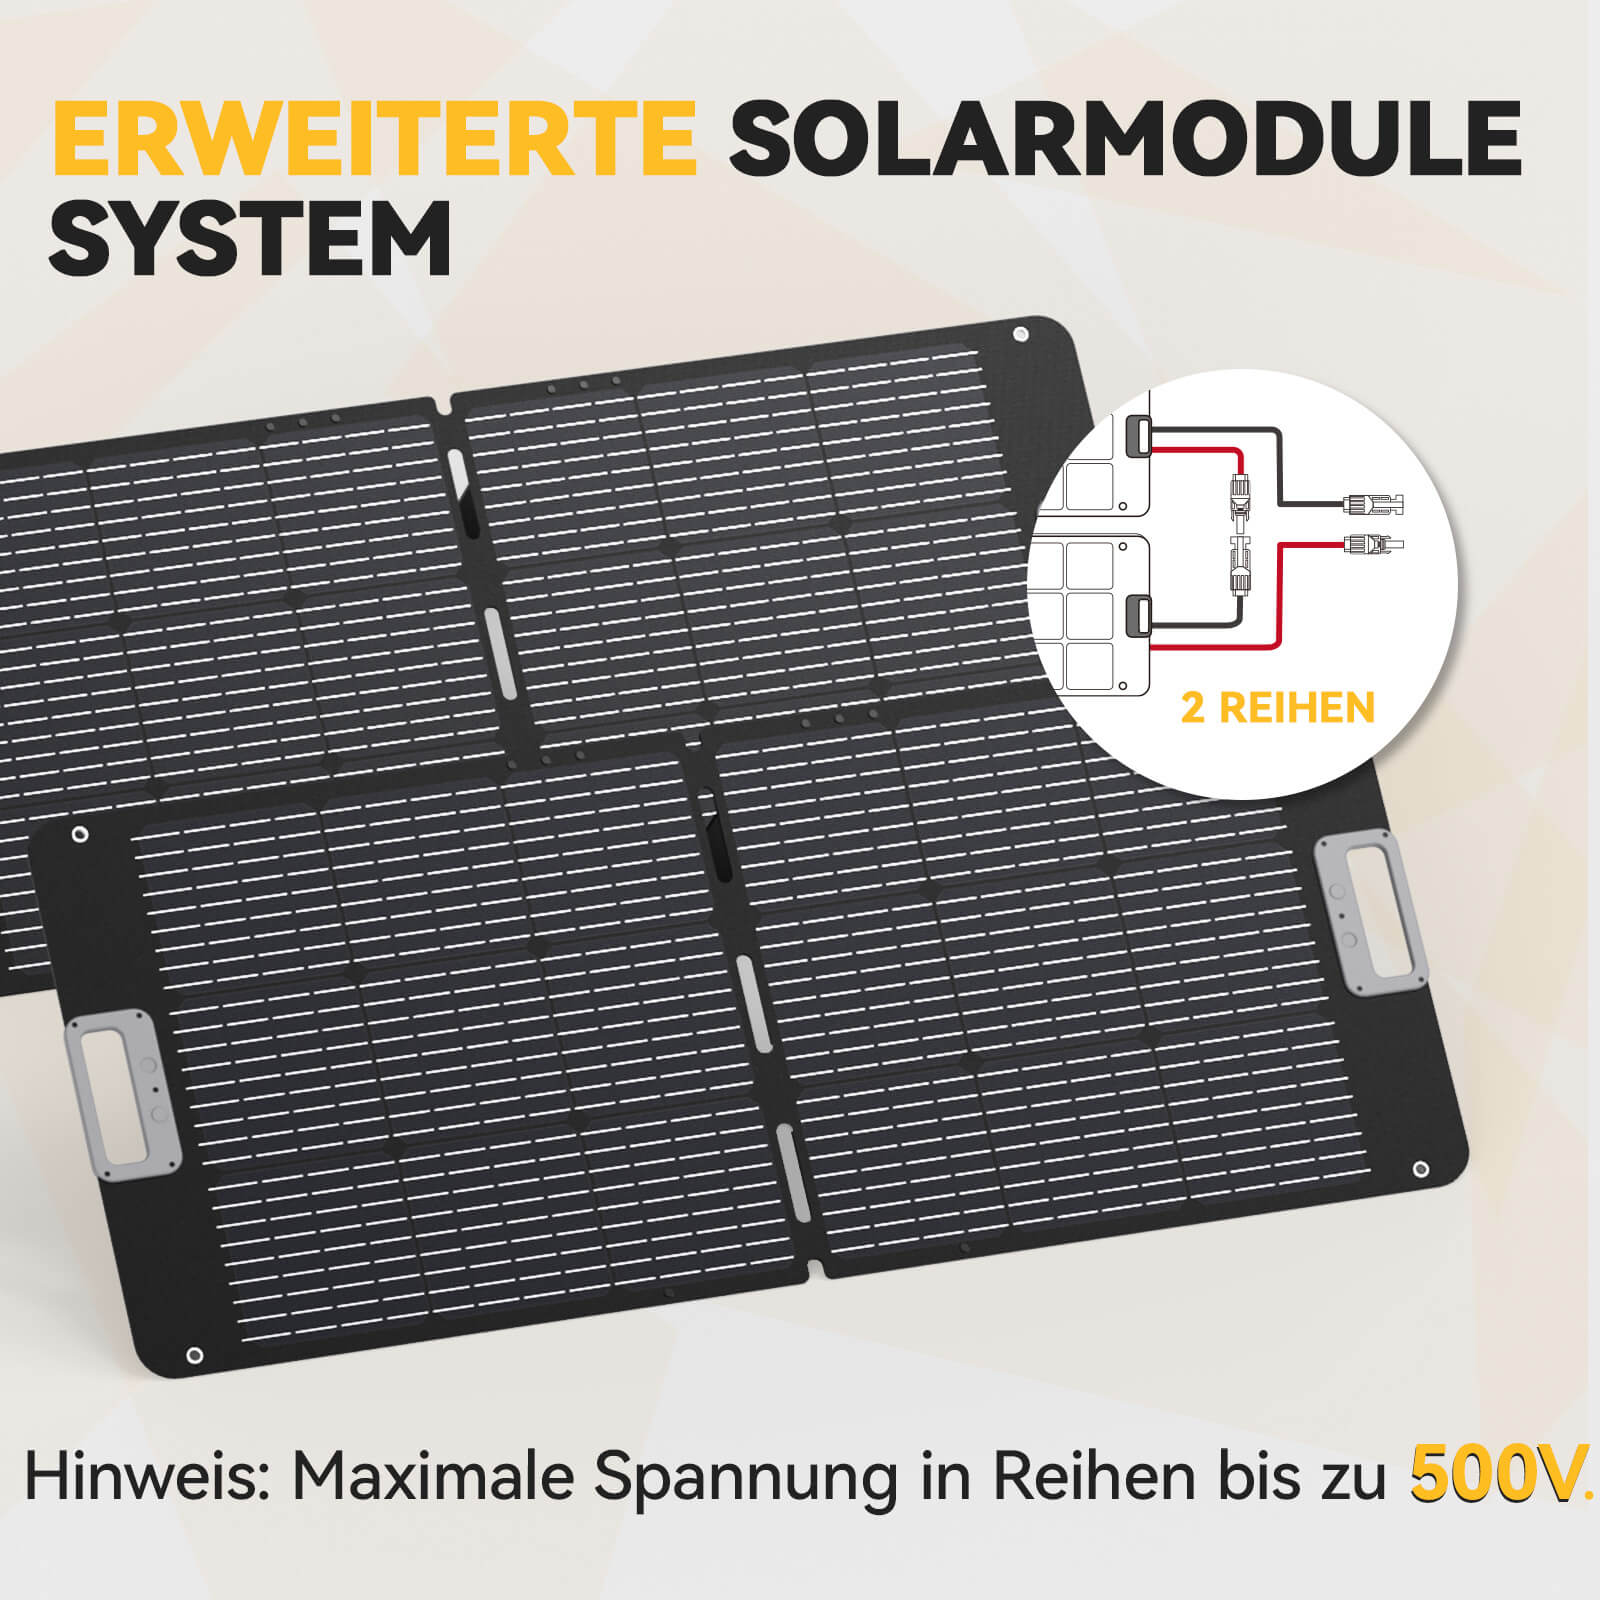 Panneau solaire portable Power Queen 100W pour centrale électrique portable P300